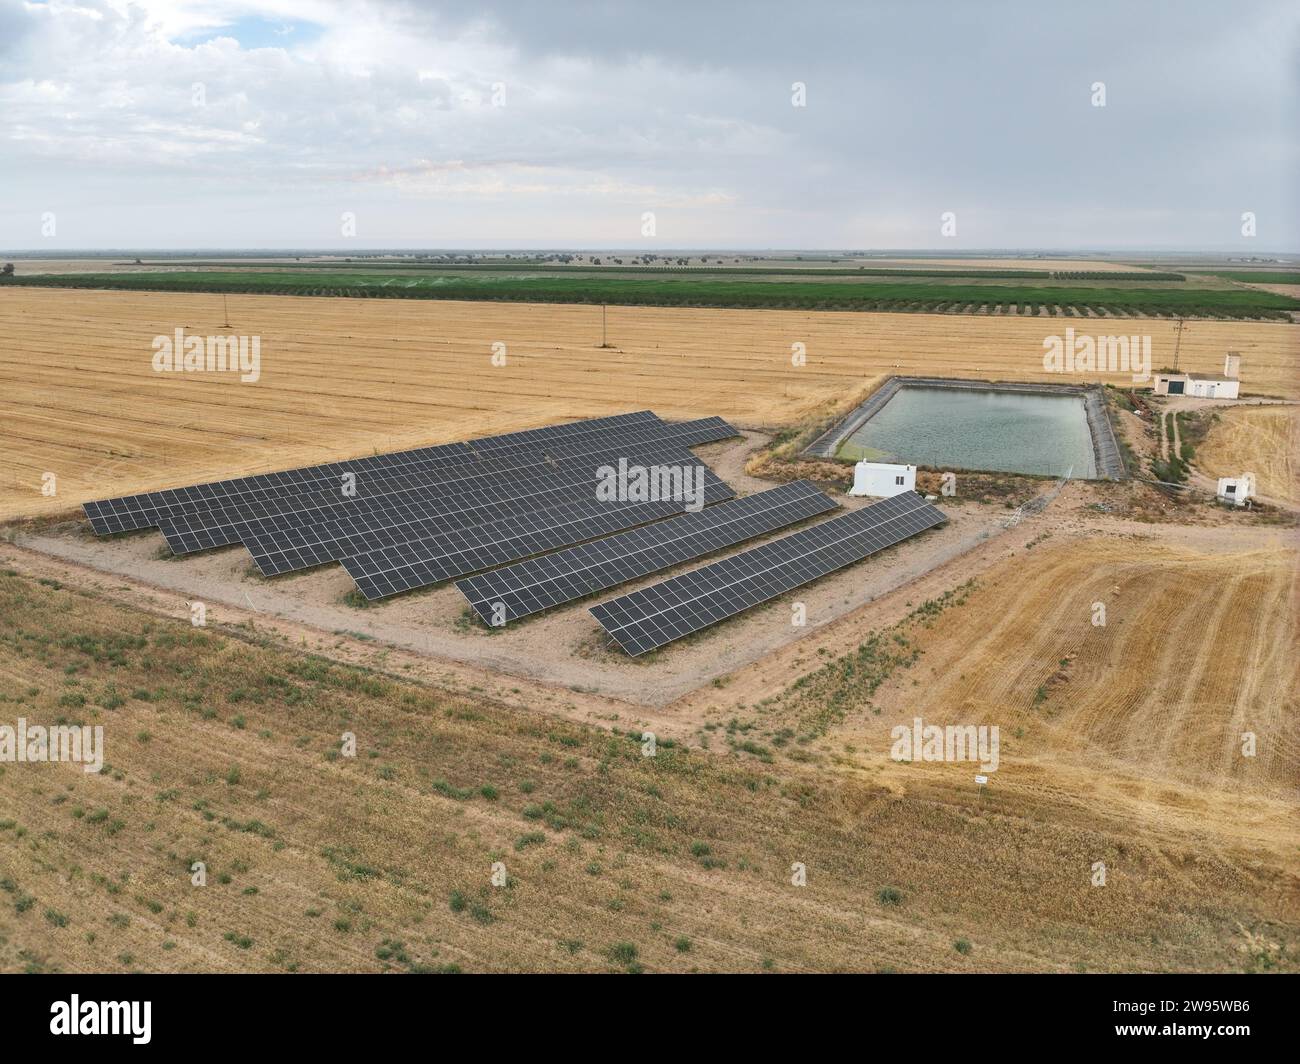 Vue aérienne de l'usine de panneaux solaires pour créer de l'énergie électrique propre industrielle à côté d'un étang d'irrigation agricole. Tir par drone Banque D'Images